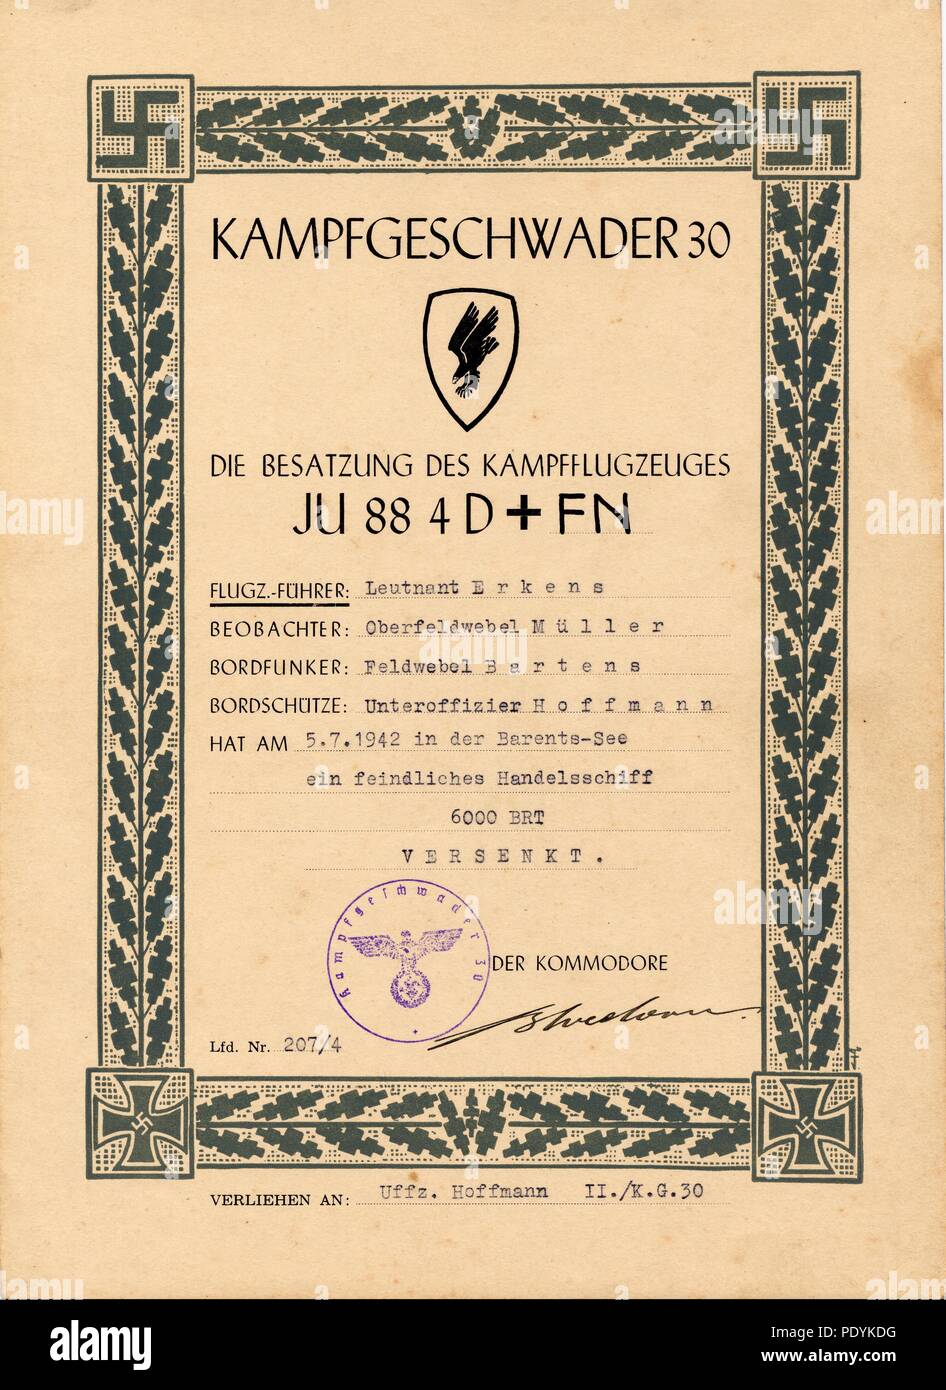 Certificato rilasciato a Feldwebel Willi Hoffmann di 5. Staffel, Kampfgeschwader 30: aggiudicati da kg 30 di Leutnant Willi Erkens (pilota), Oberfeldwebel Richard Müller (osservatore), Feldwebel Bartens (operatore Radio) e Unteroffizier Willi Hoffmann (aria Gunner) 5./KG 30 per il naufragio di un nemico nave mercantile nel Mare di Barents il 5 luglio 1942, mentre equipaggi Junkers Ju 88 4D+FN. Il documento è firmato in inchiostro da importanti Erich Bloedorn, Kommodore del Kampfgeschwader 30. La data coincide con un giorno di attacchi devastanti sul convoglio Alleato PQ17 e può riguardare la MV Peter Kerr. Foto Stock